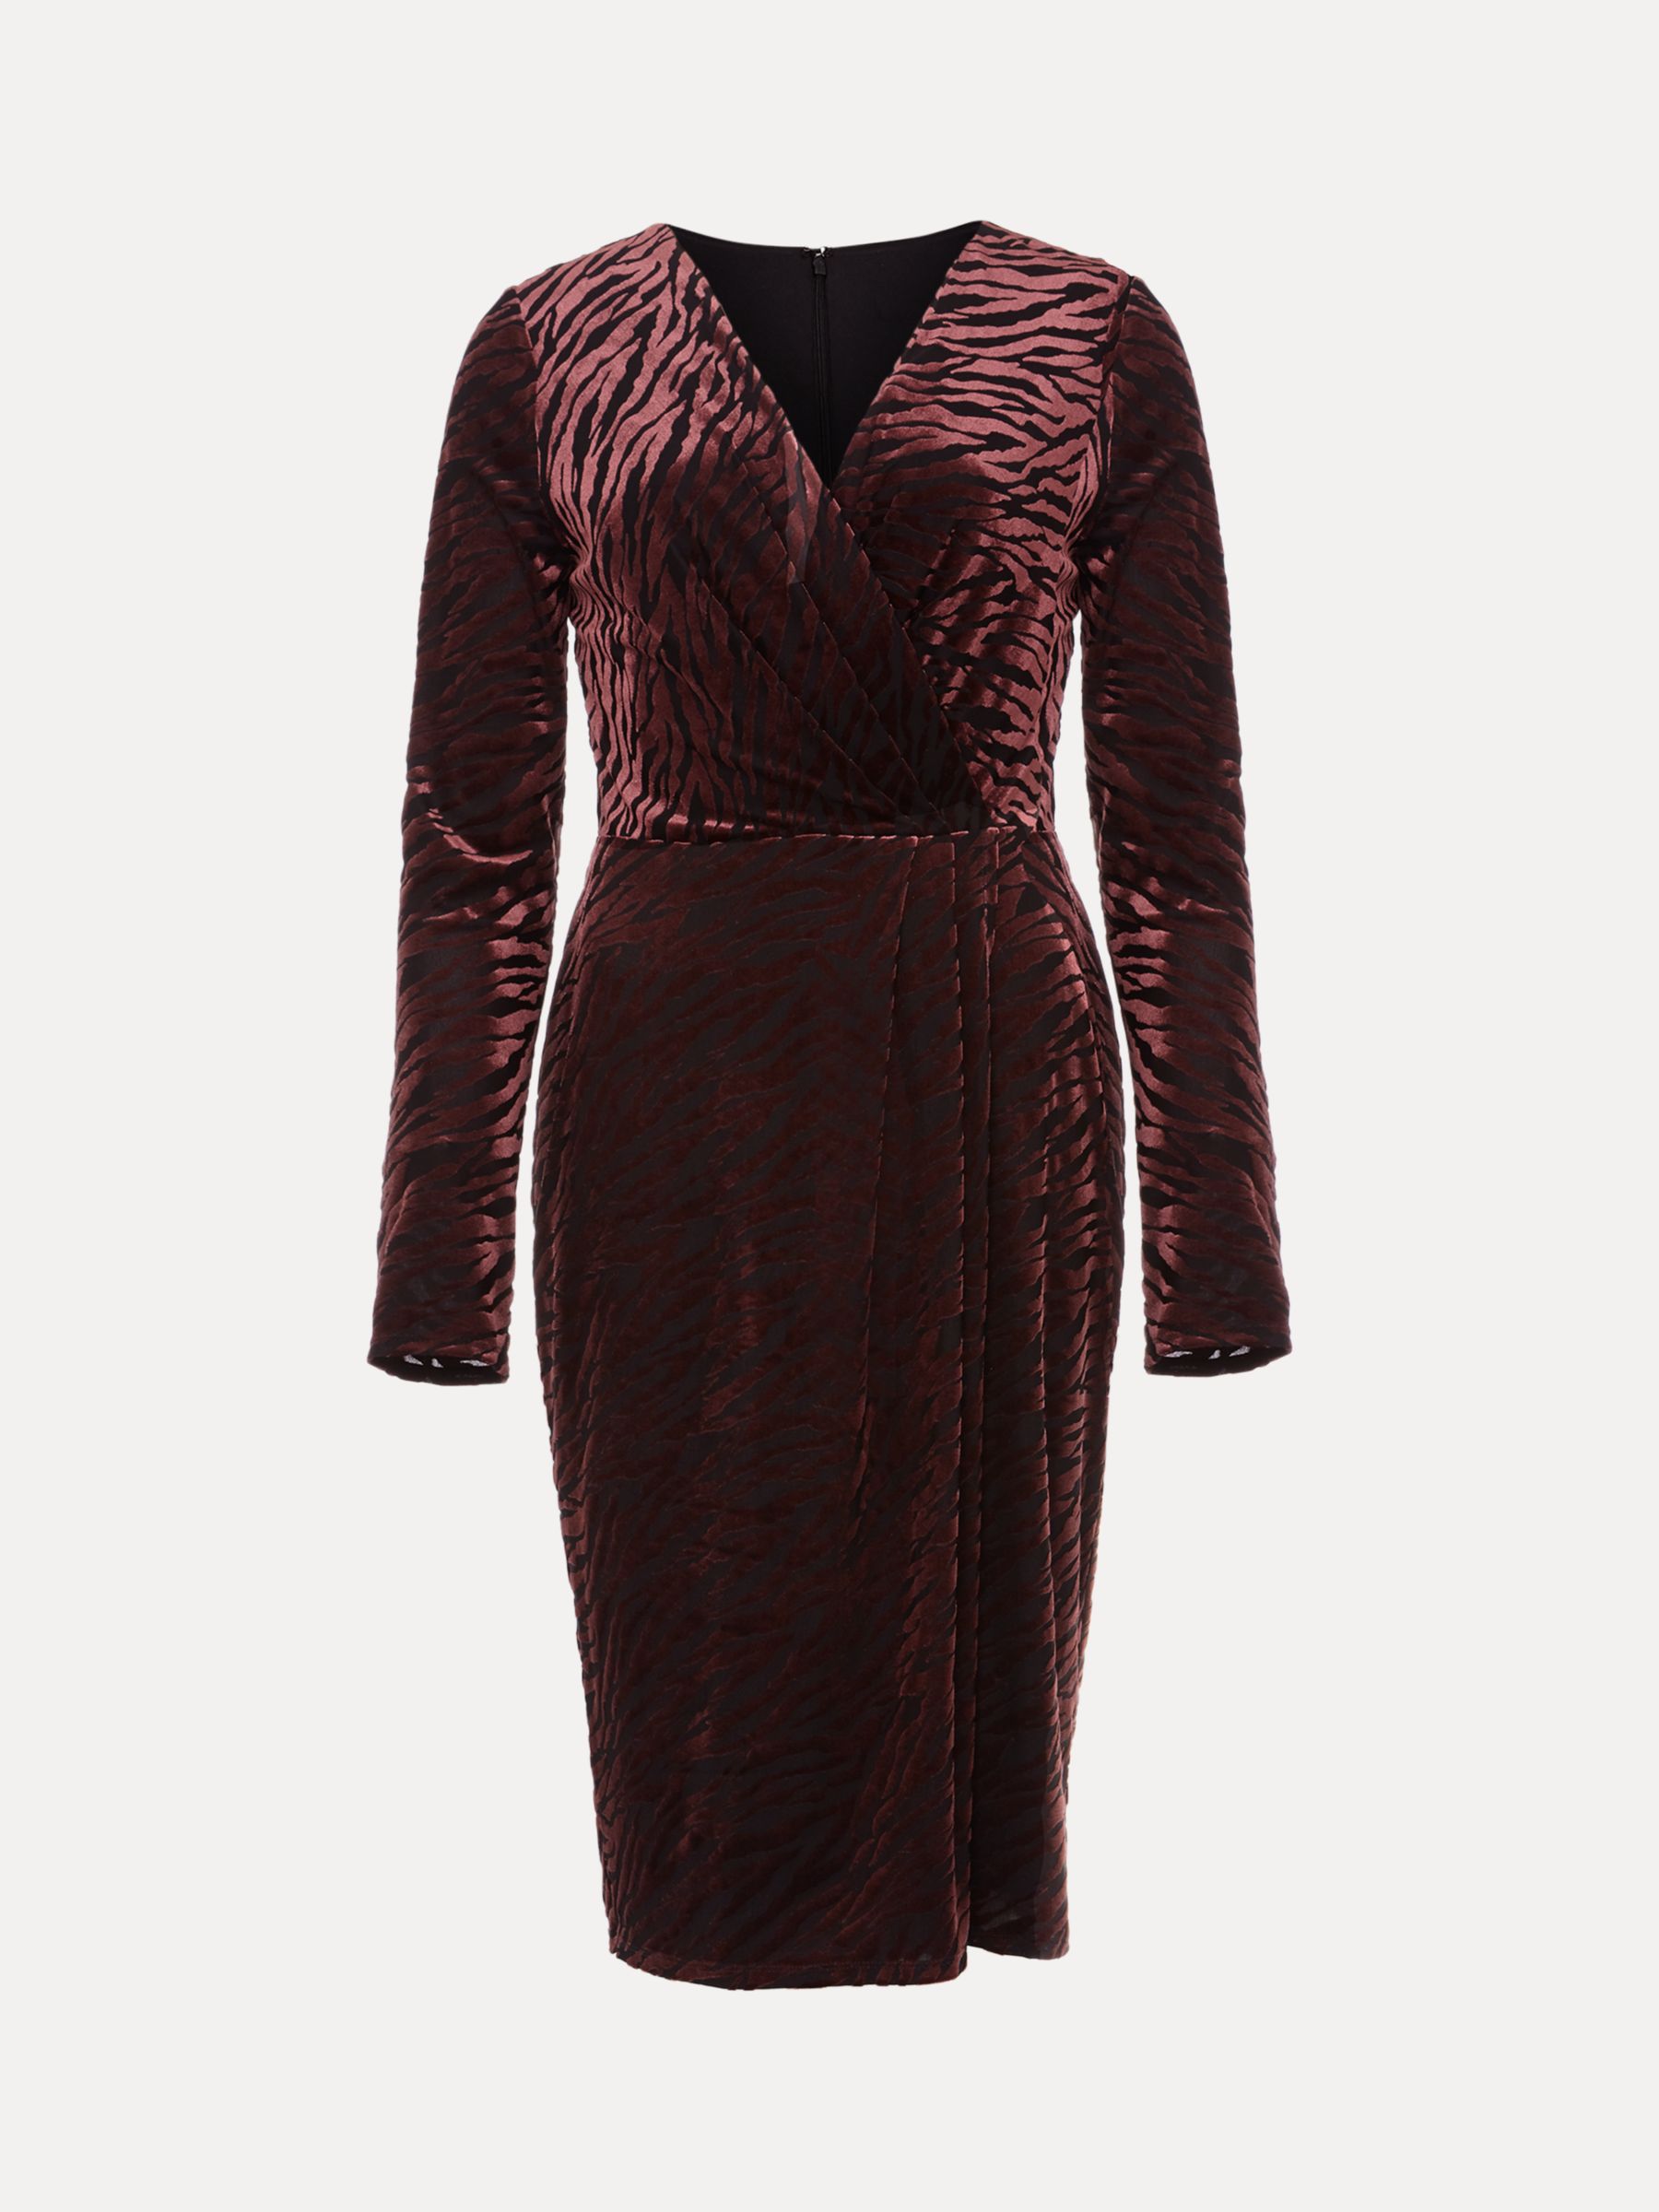 Phase Eight Elina Zebra Velvet Dress, Burgundy at John Lewis & Partners